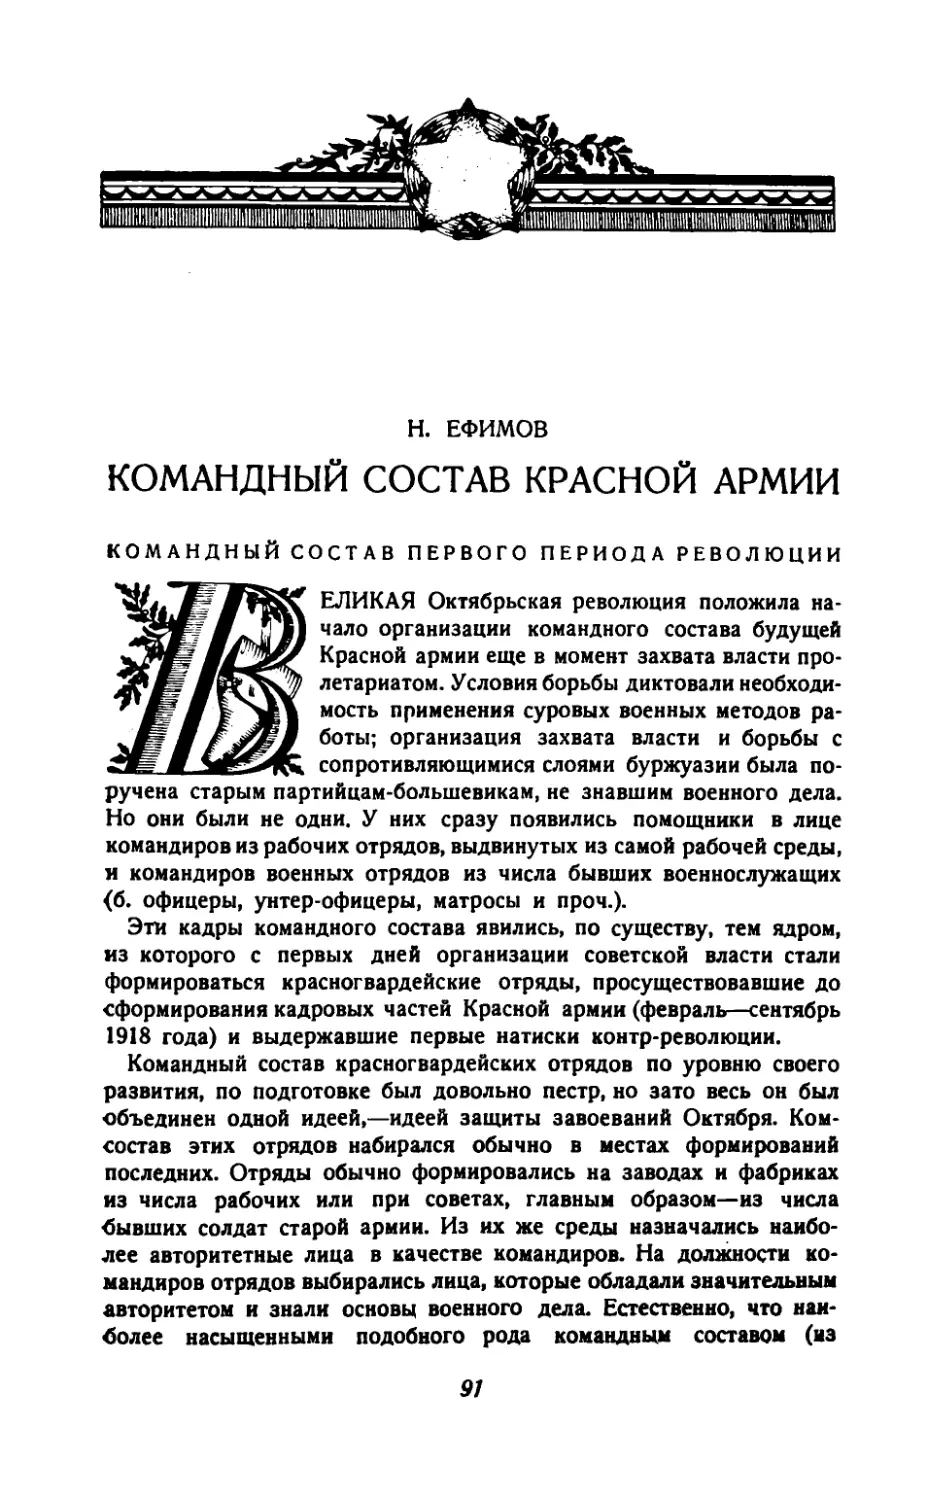 Н.Ефимов — Командный состав Красной армии